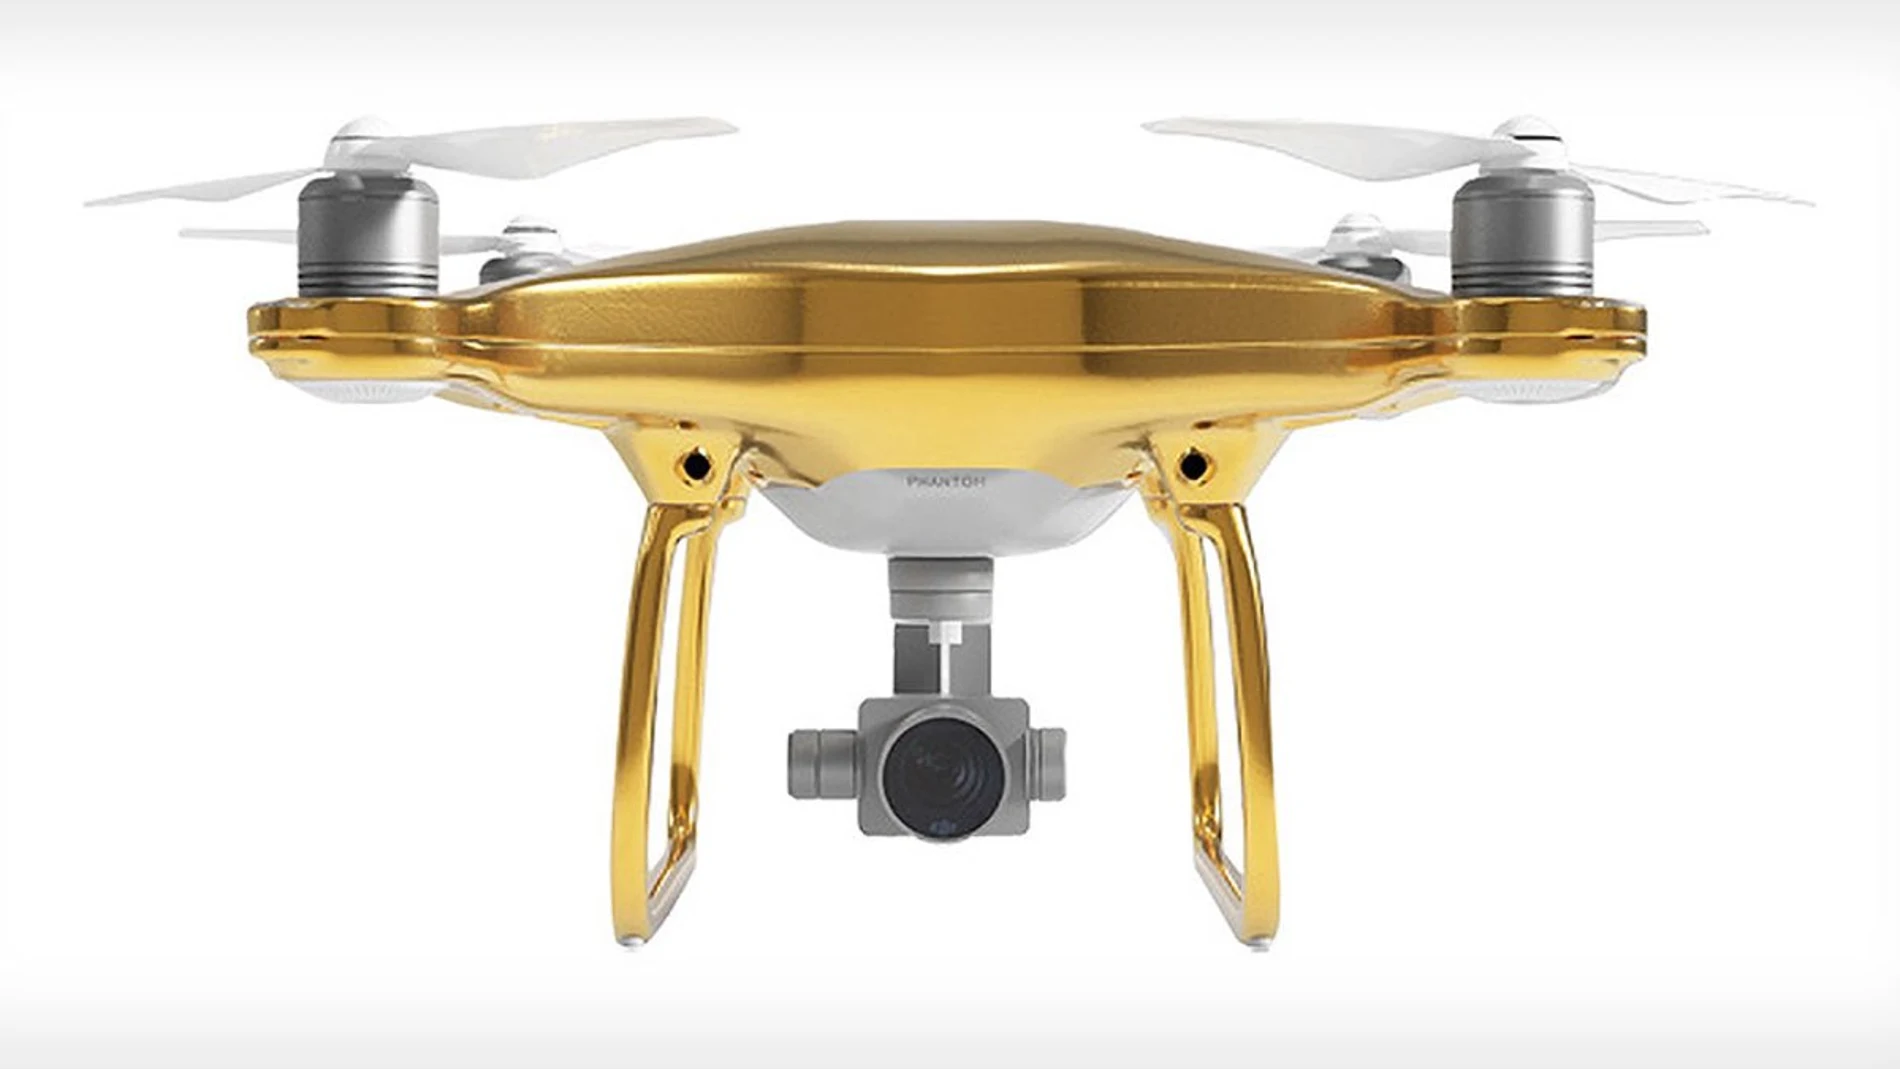 El lujoso dron DJI Phantom, además de volar, está bañado en oro